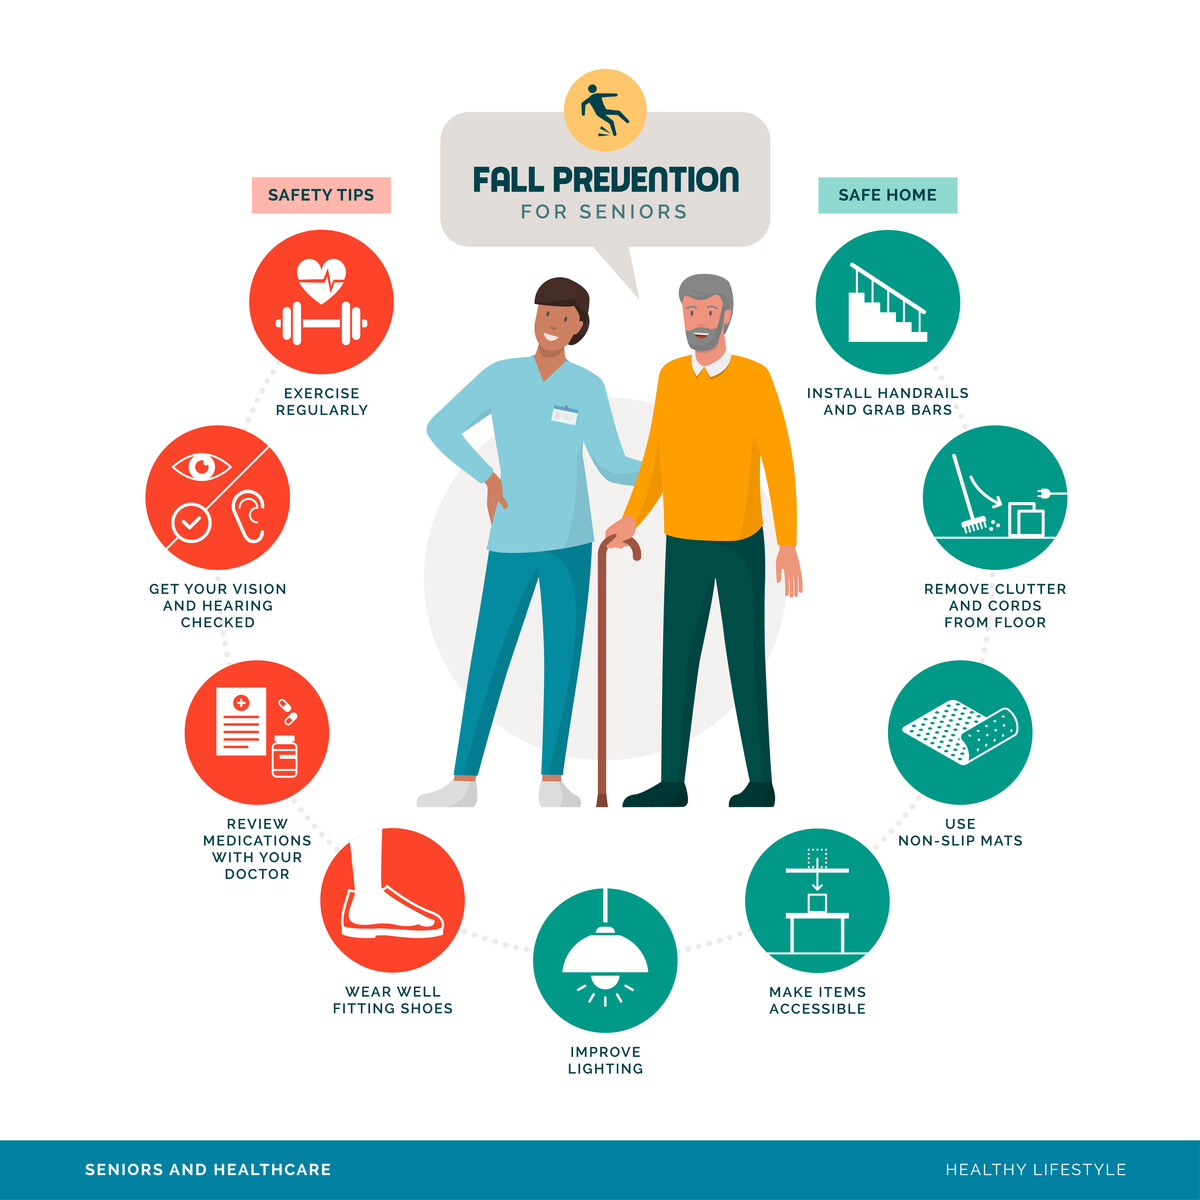 Fall prevention for seniors